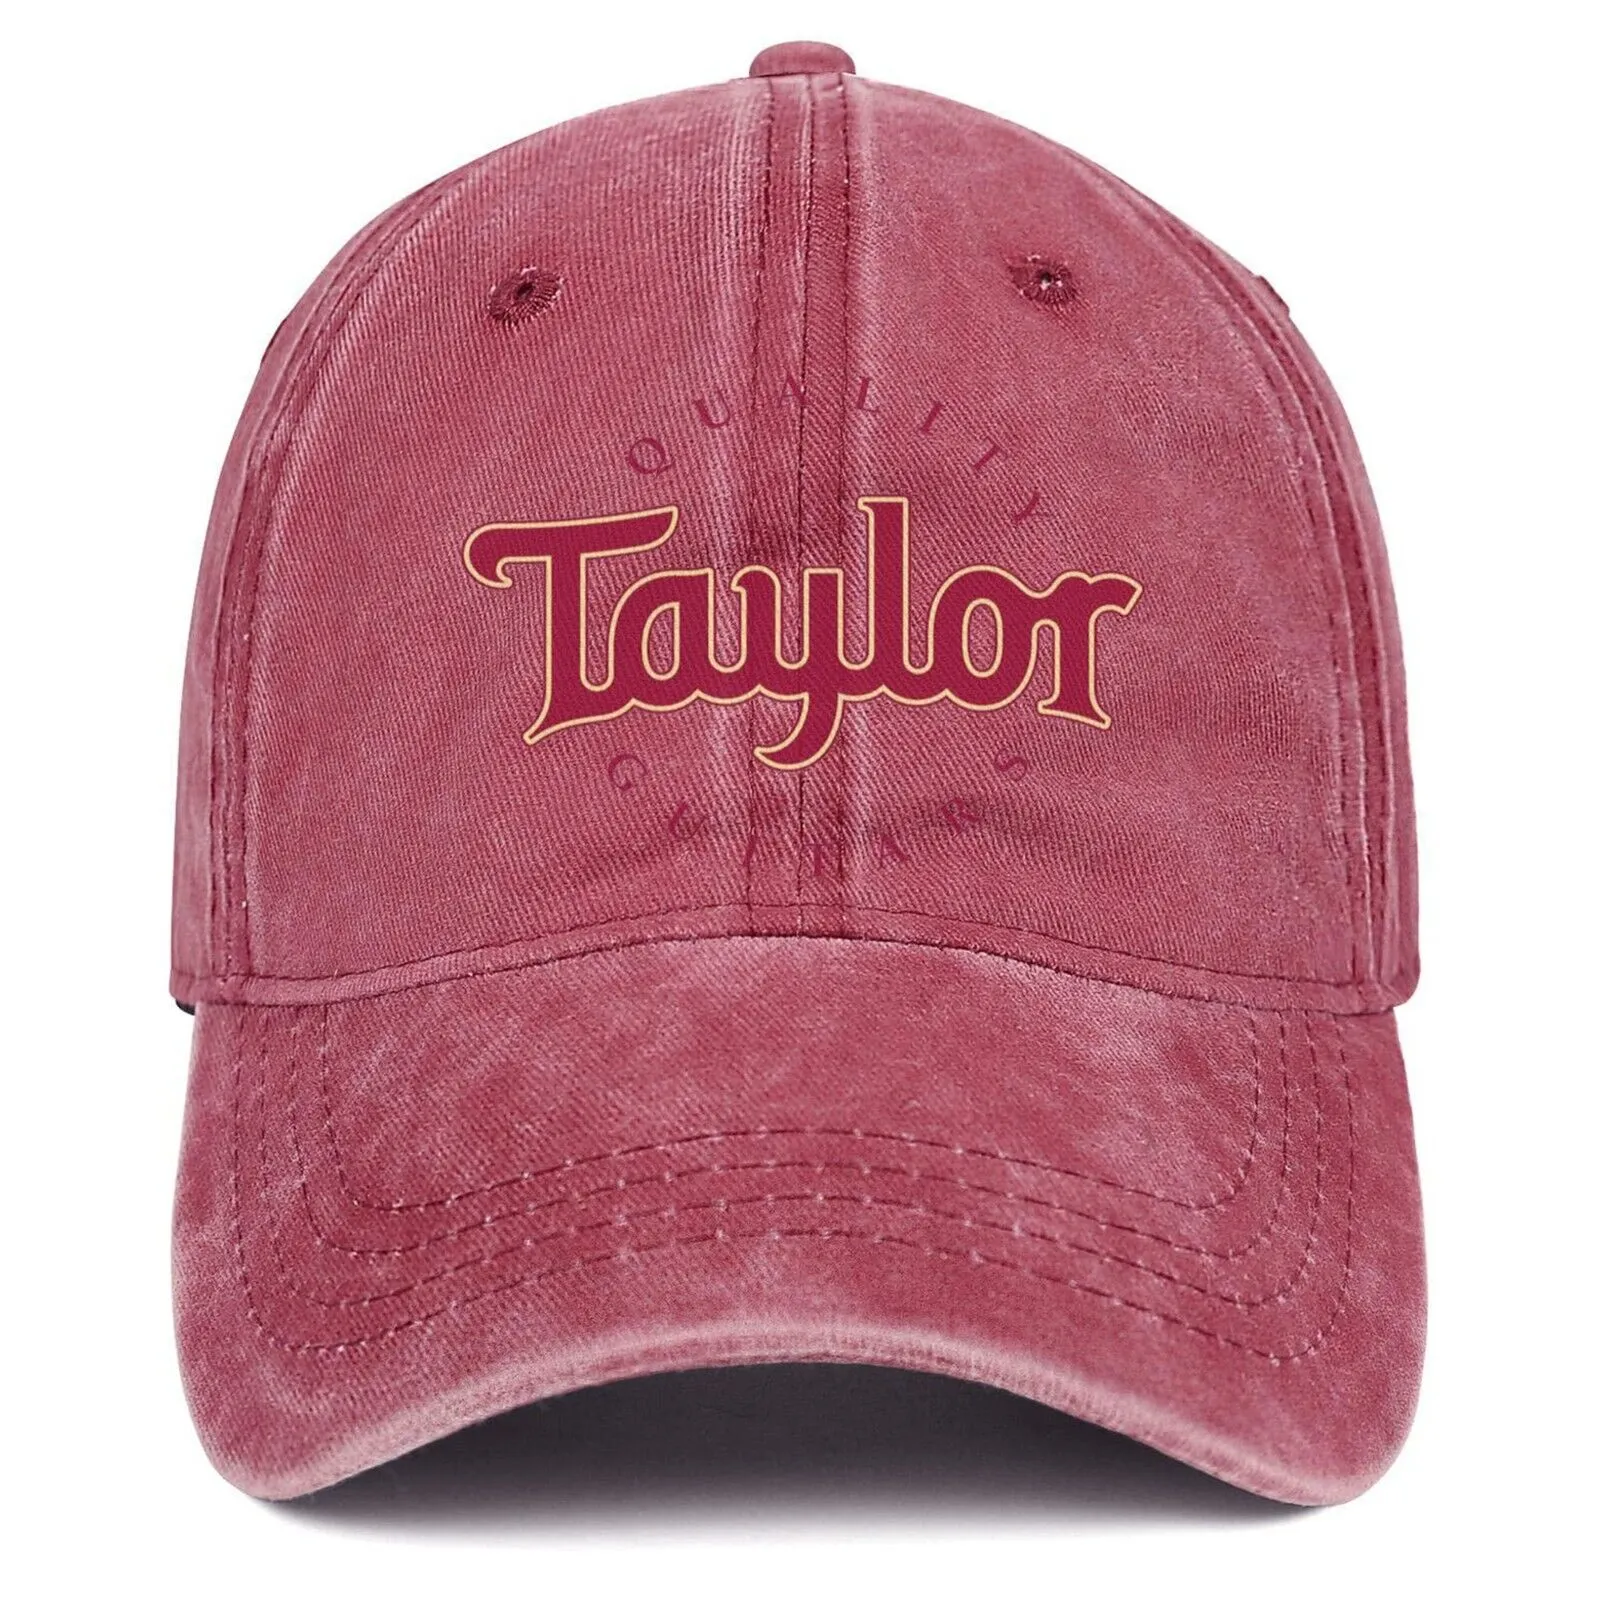 Guitarras acústicas Taylor gorra de béisbol cosida rosa roja Snapback sombrero nuevo